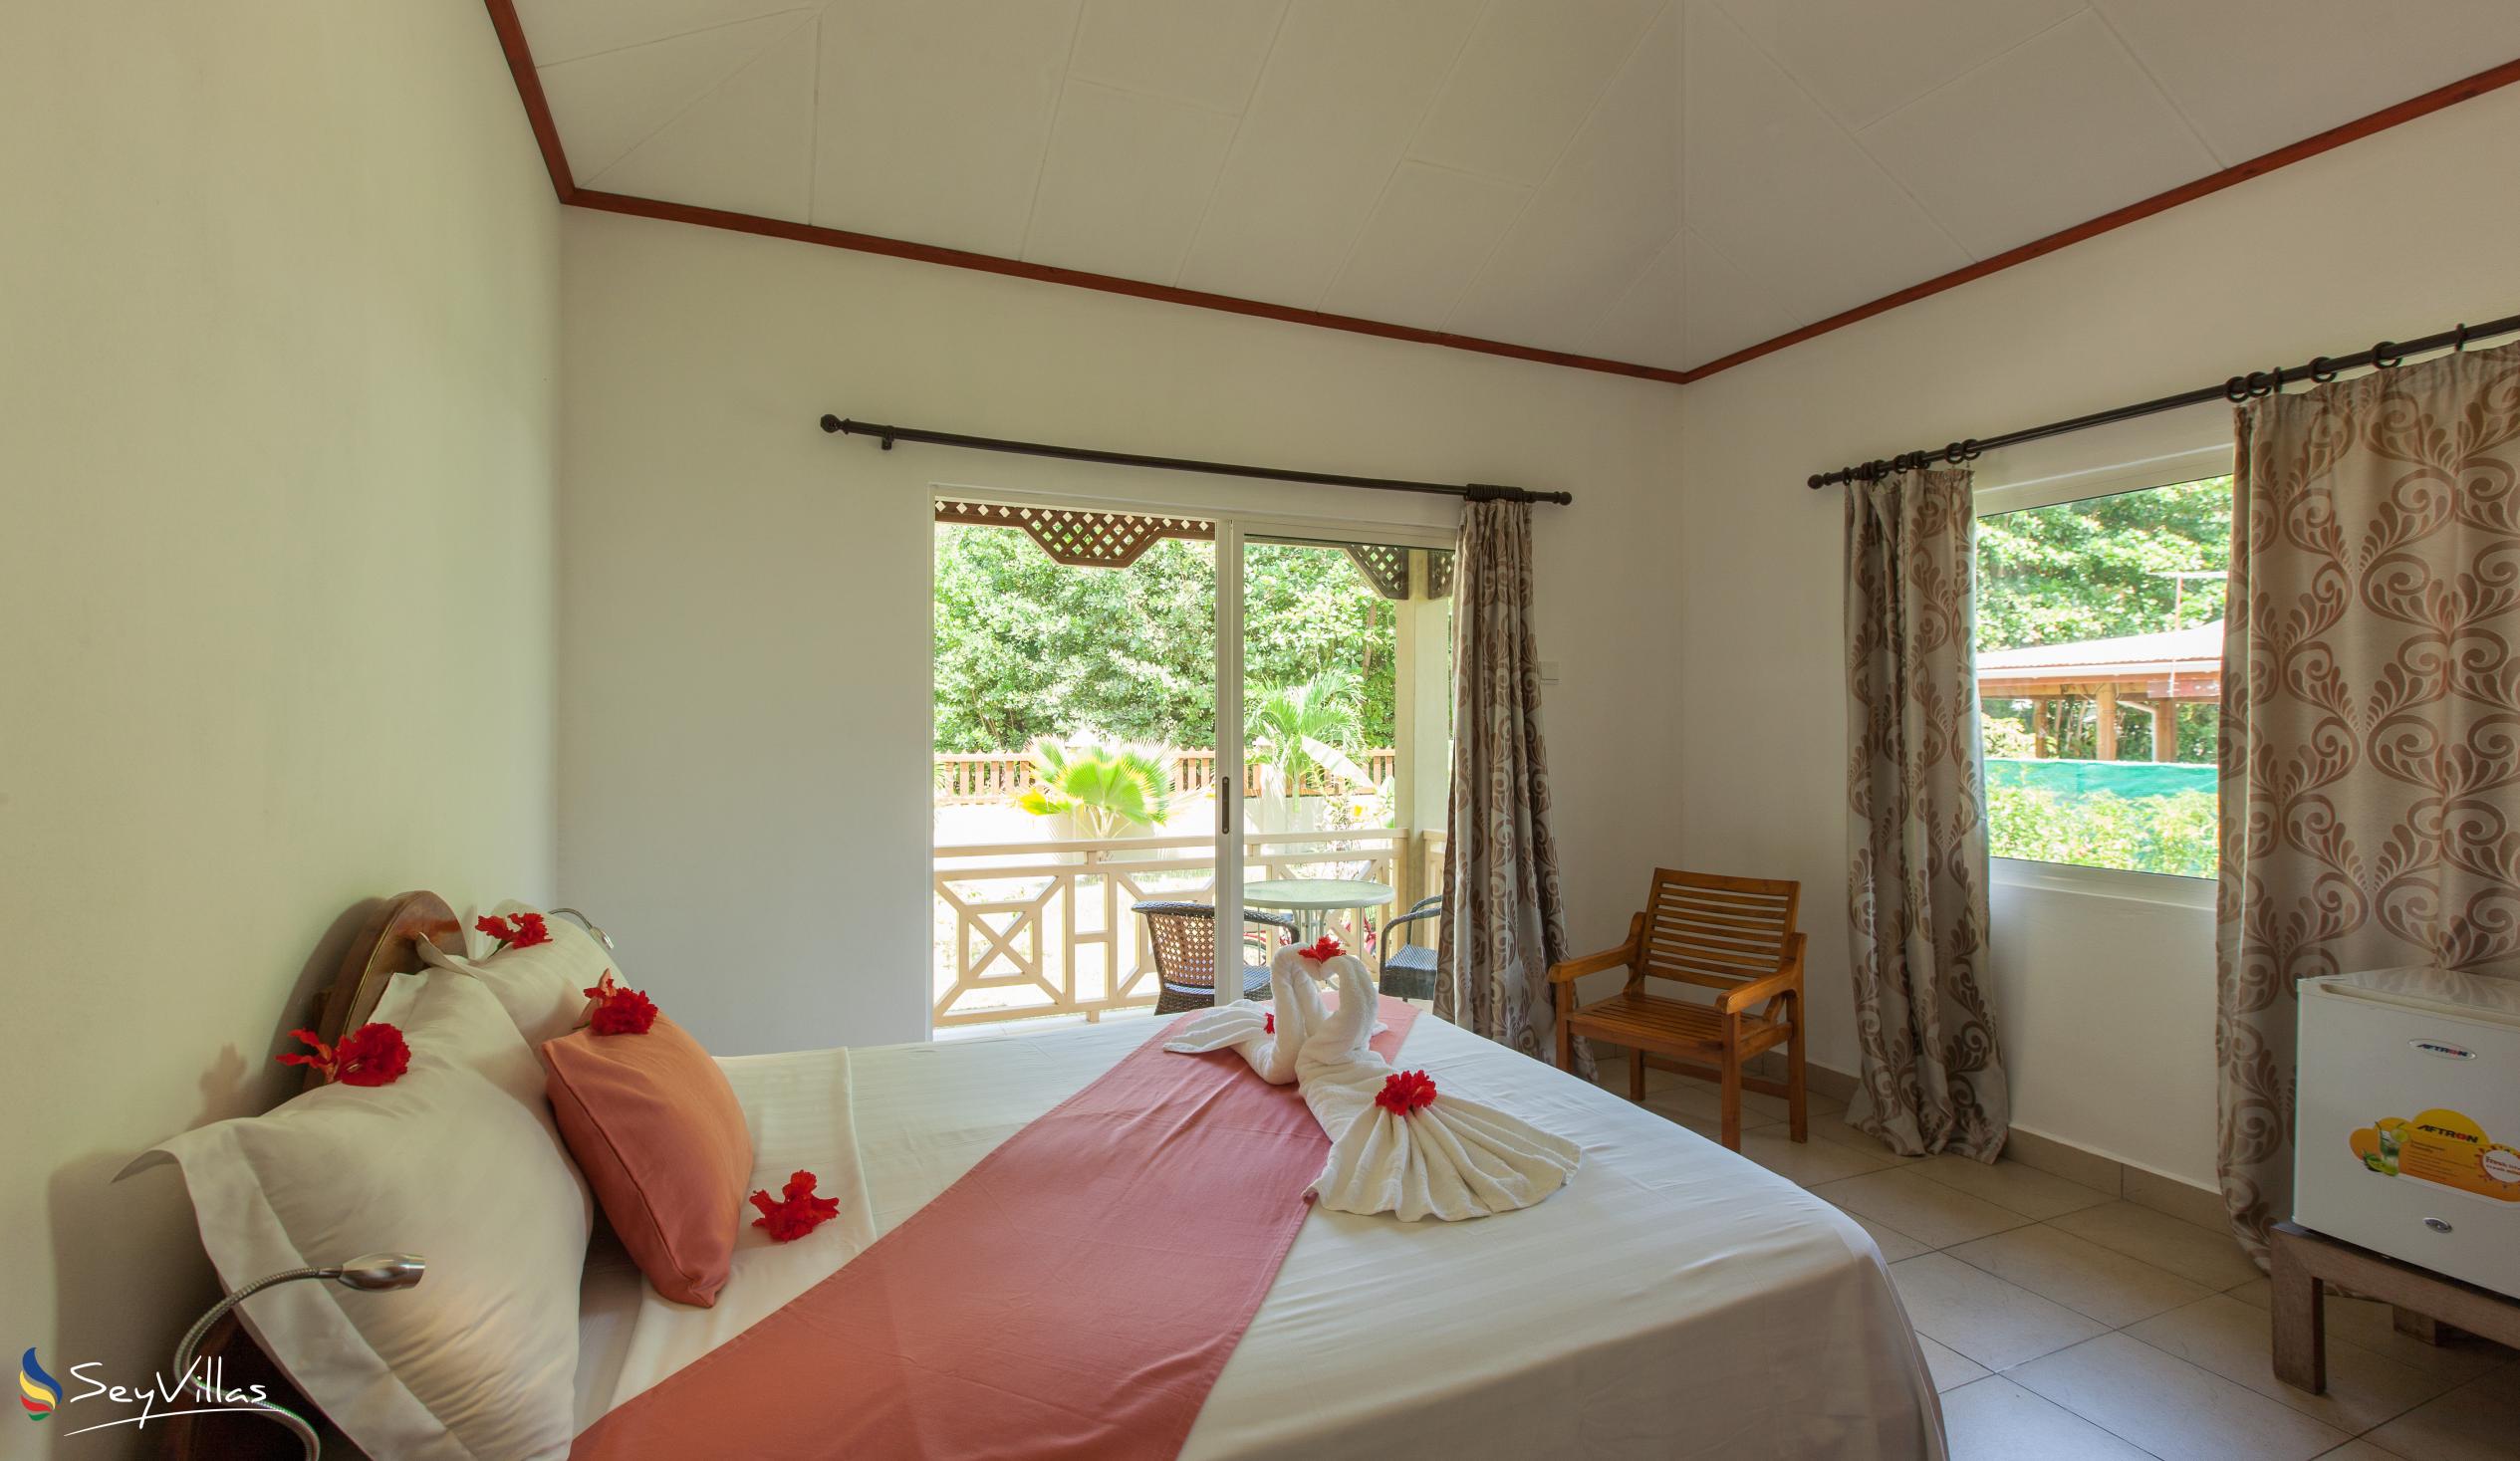 Foto 20: Hostellerie La Digue - Bungalow con 3 camere da letto - La Digue (Seychelles)